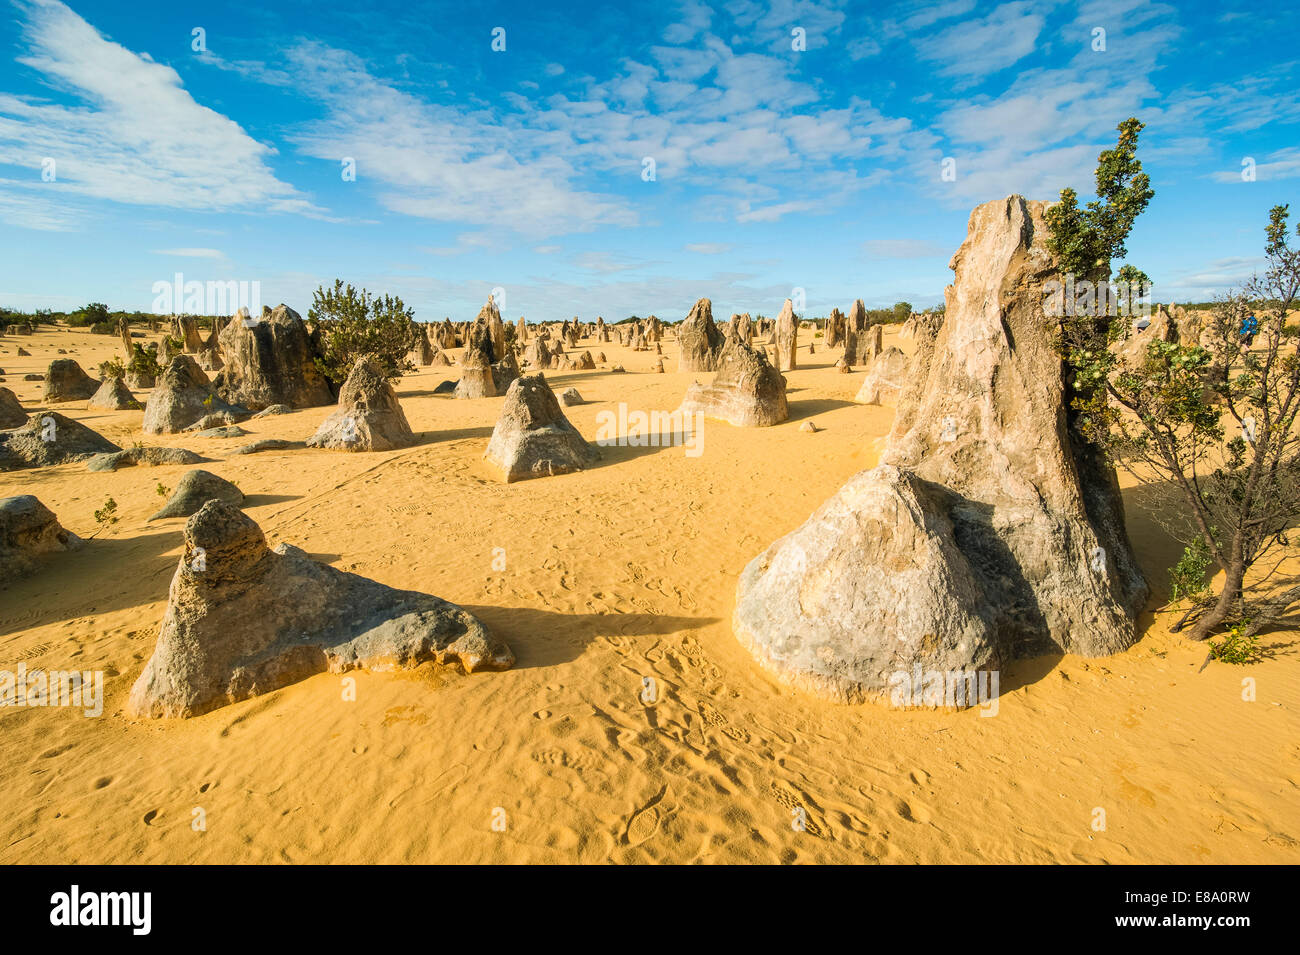 Les formations calcaires, le Parc National de Nambung, Australie occidentale Banque D'Images